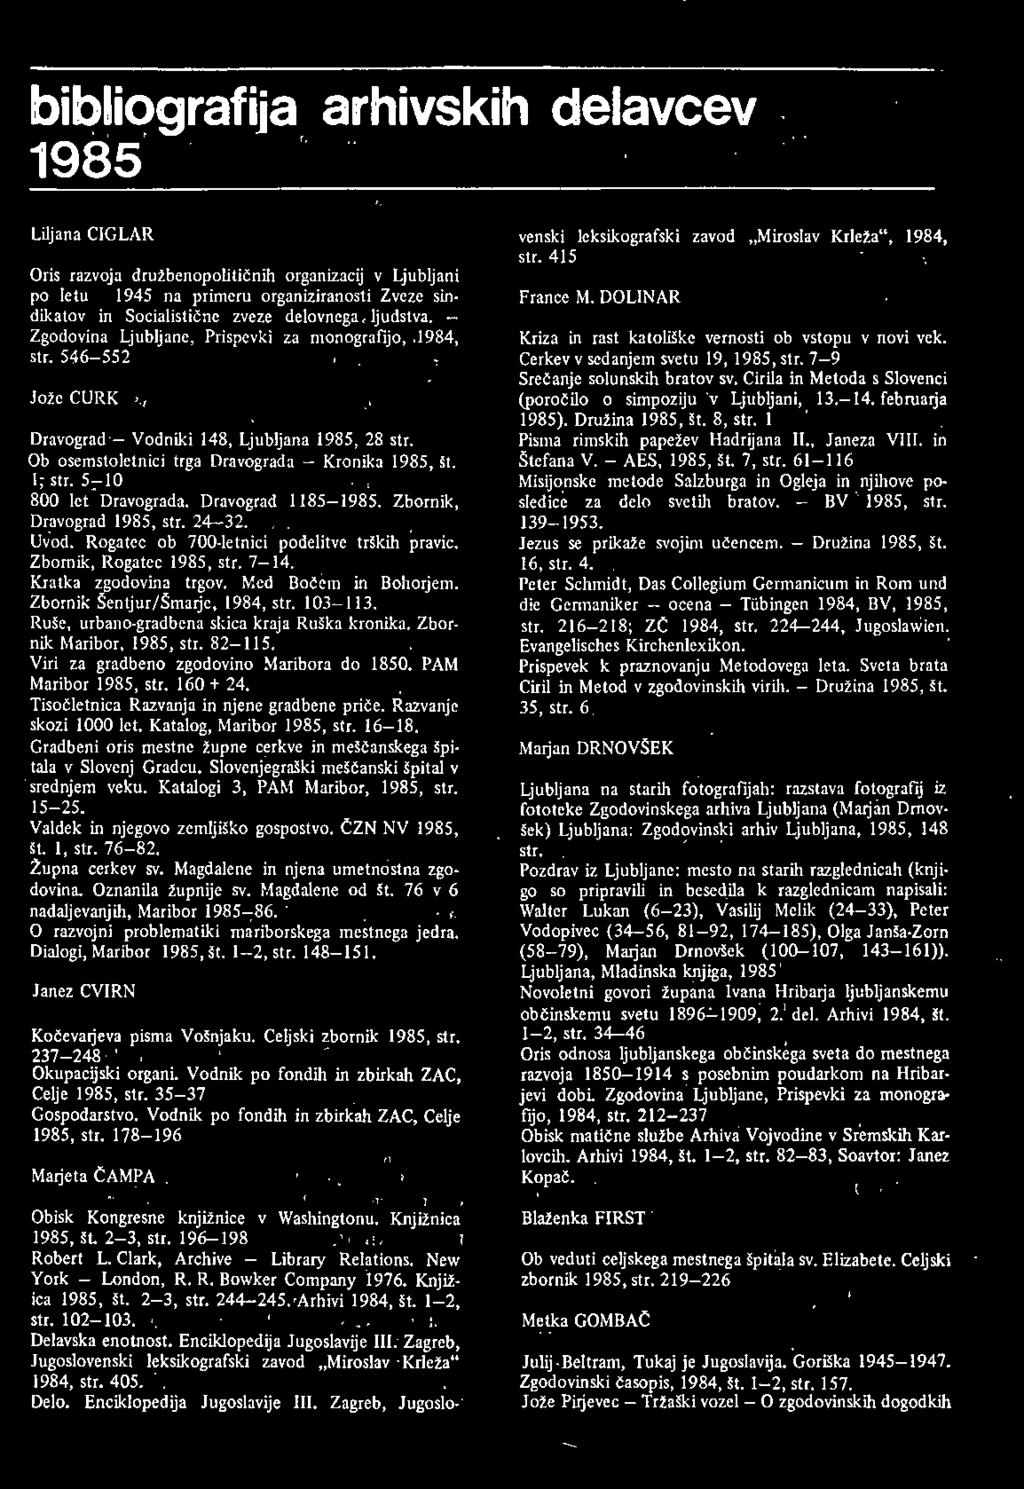 PAM Maribor 1985, str. 160 + 24. Tisočletnica Razvanja in njene gradbene priče. Razvanjc skozi 1000 let. Katalog, Maribor 1985, str. 16-18.